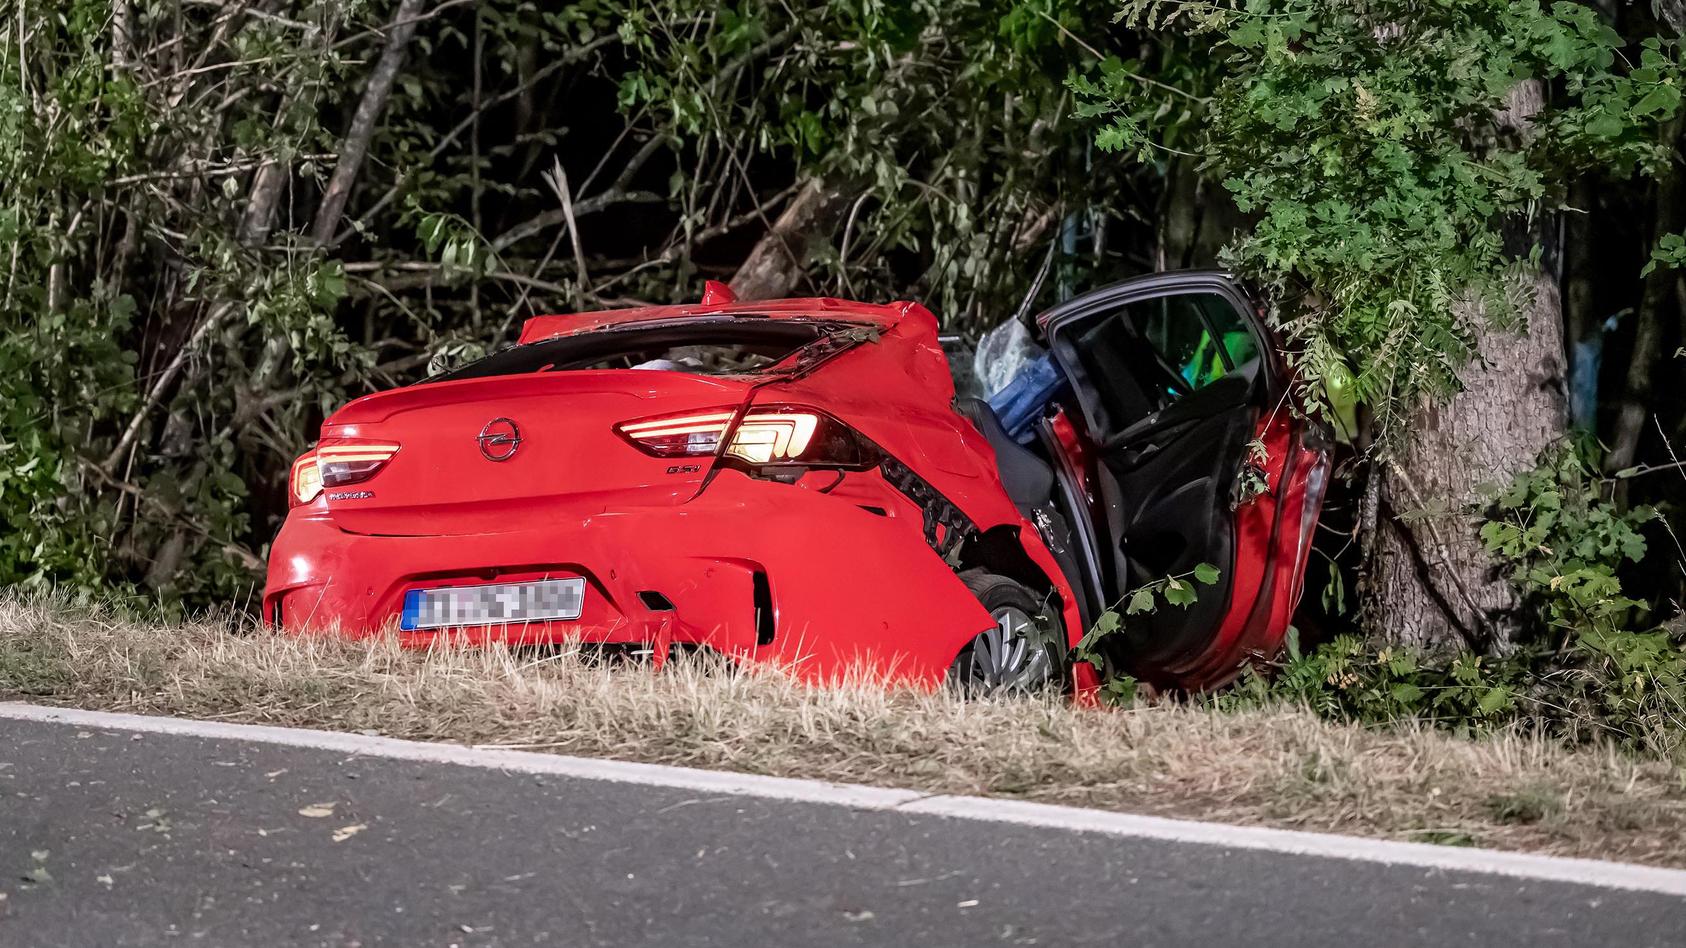 Unfall-Drama in Wenden - Auto kracht in Bäume - zwei Tote, 13-Jährige schwer verletzt